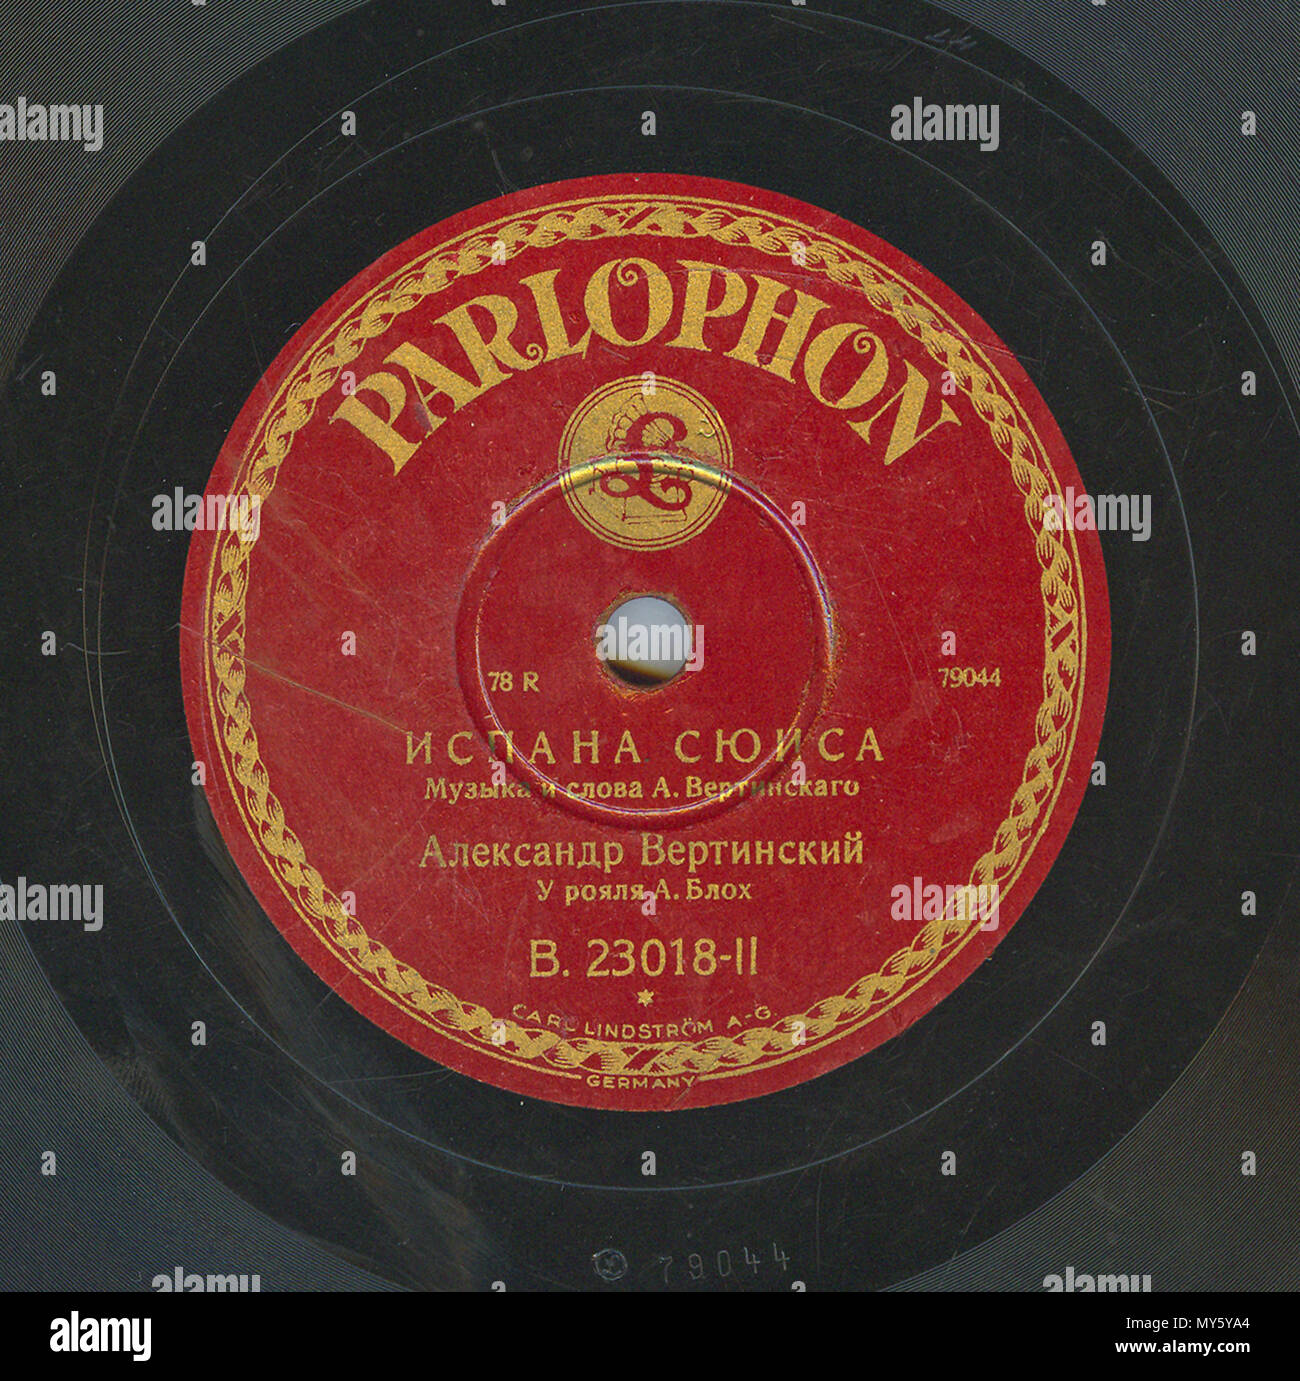 . Englisch: Vertinsky Parlophone B. 23018 02. 6. April 2010, 12:02:58. Parlophone 548 Vertinsky Parlophone B. 23018, 02. Stockfoto